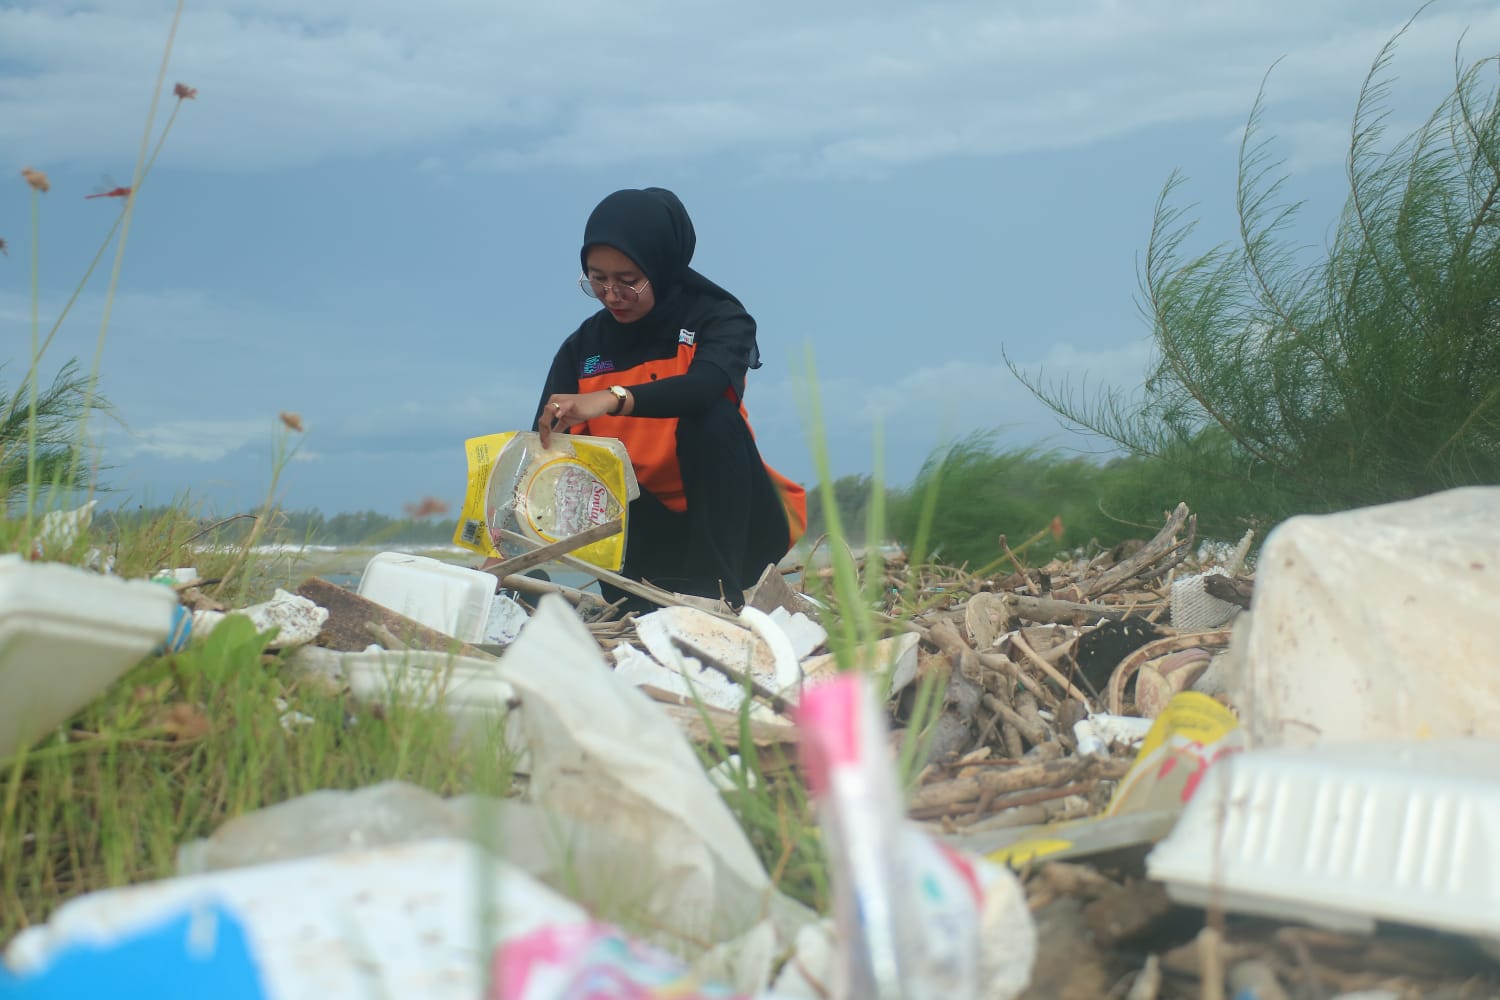 Berserak tumpukan sampah bercampur kepingan kayu dan bambu dibeberapa titik lokasi disekitaran pantai Jakat Bengkulu.